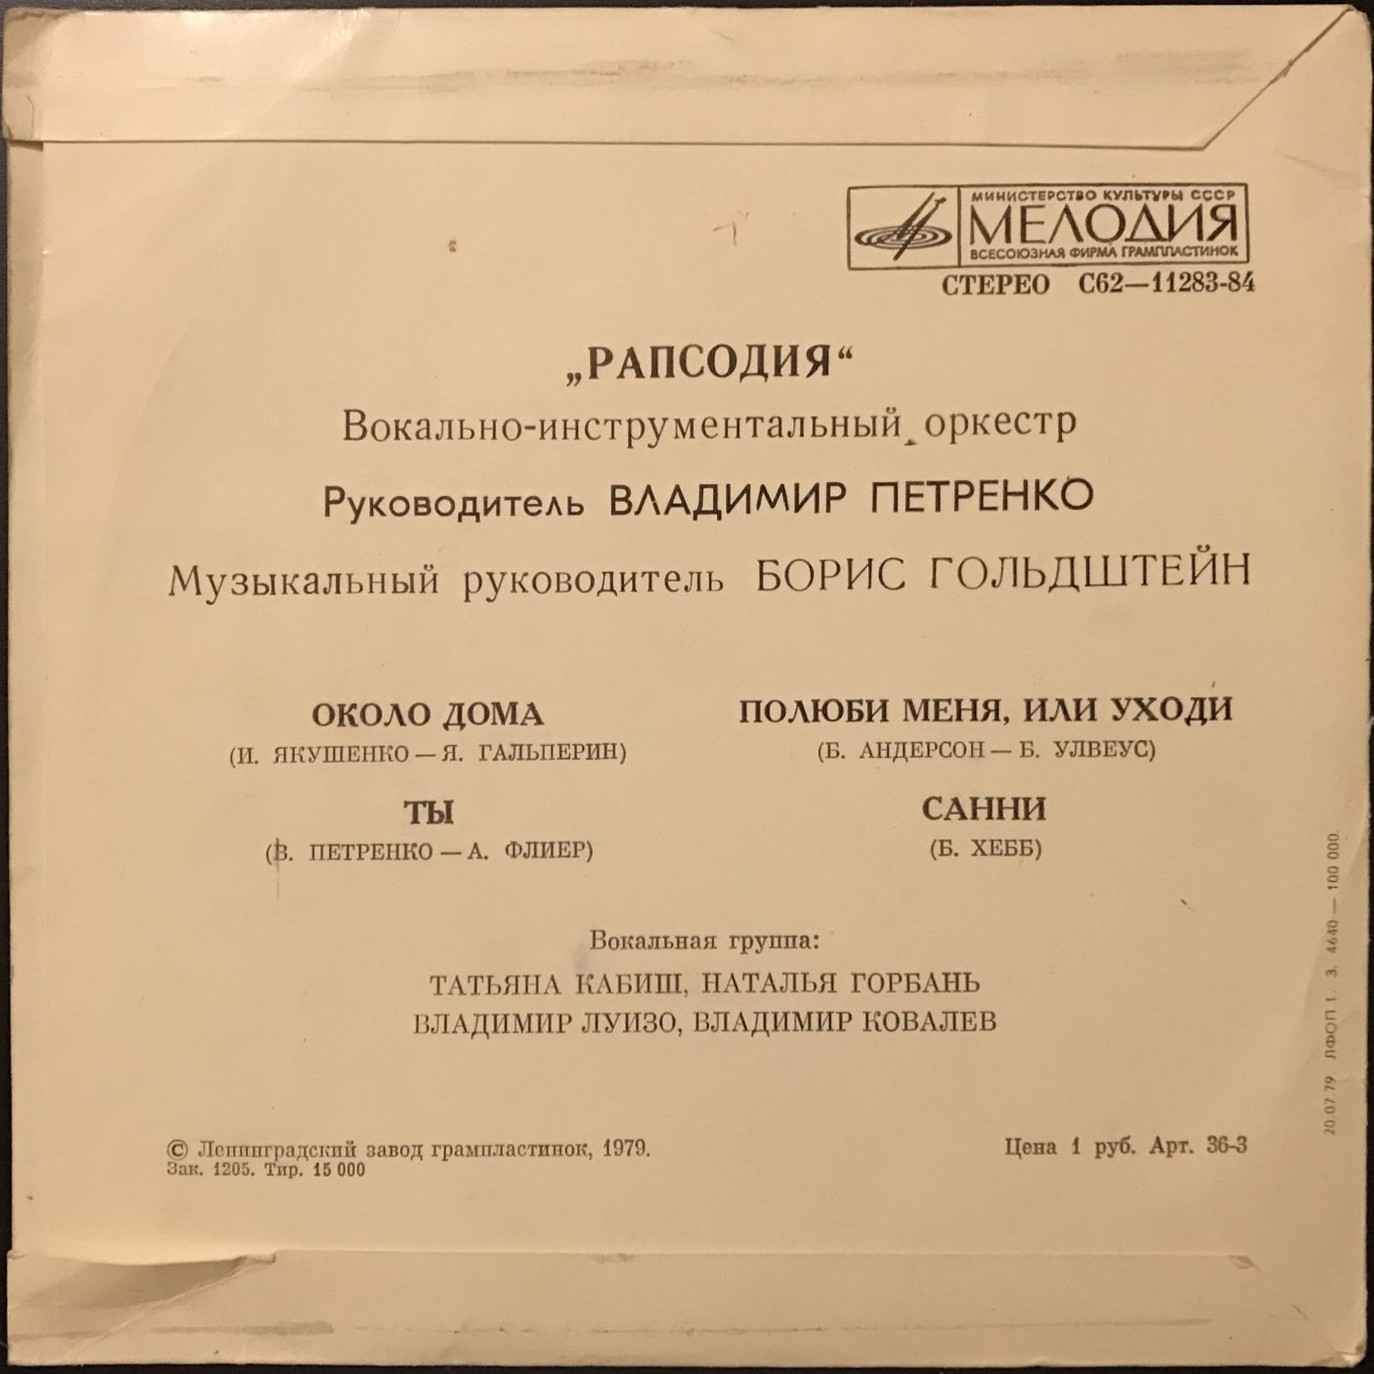 Вокально-инструментальный оркестр "РАПСОДИЯ"